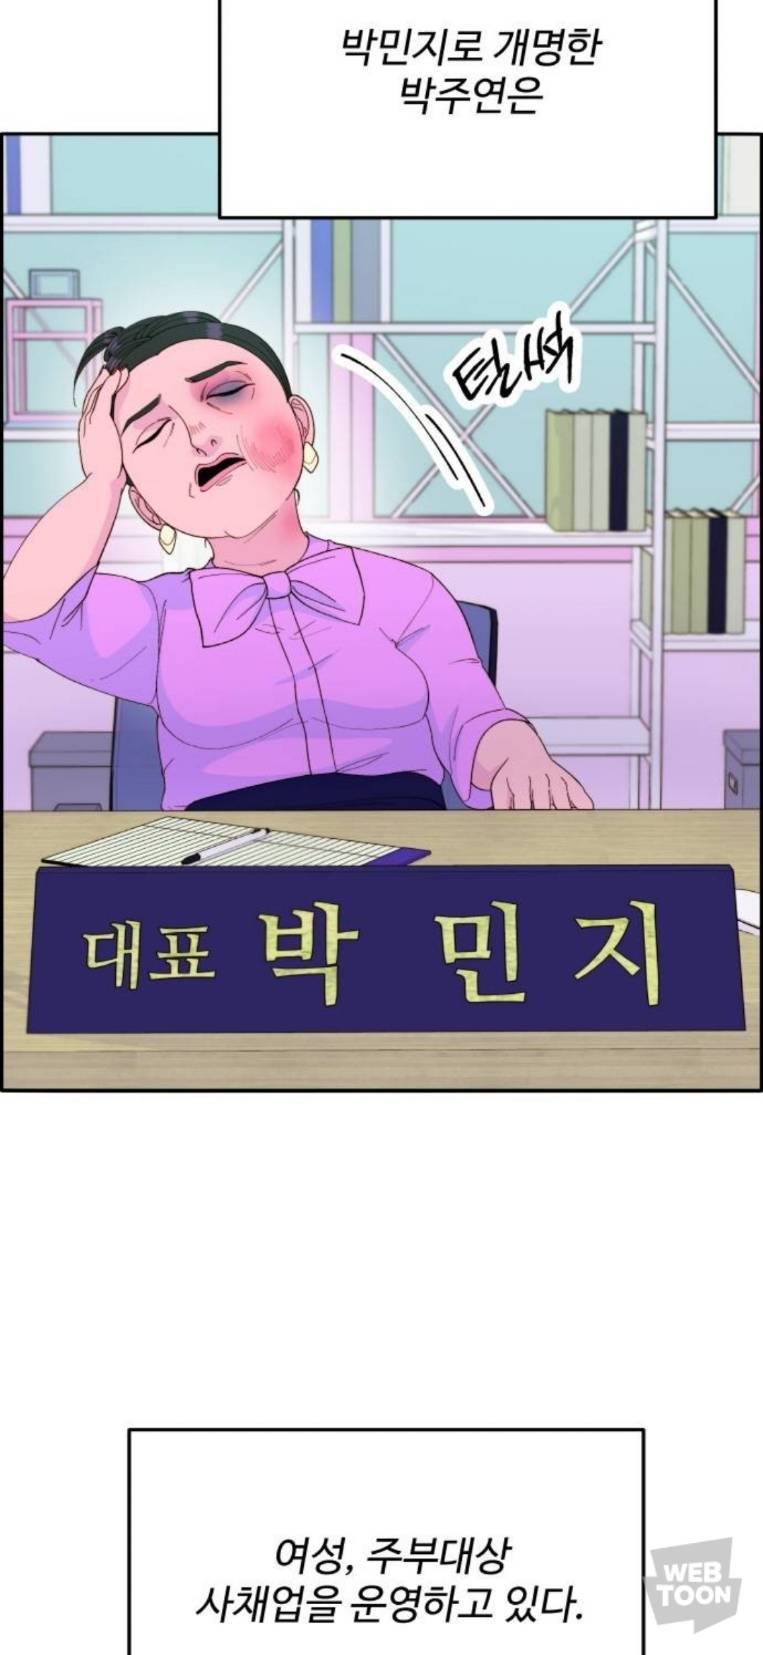 2부 시작한 네이버웹툰 팔이피플 근황 (스포) | 인스티즈